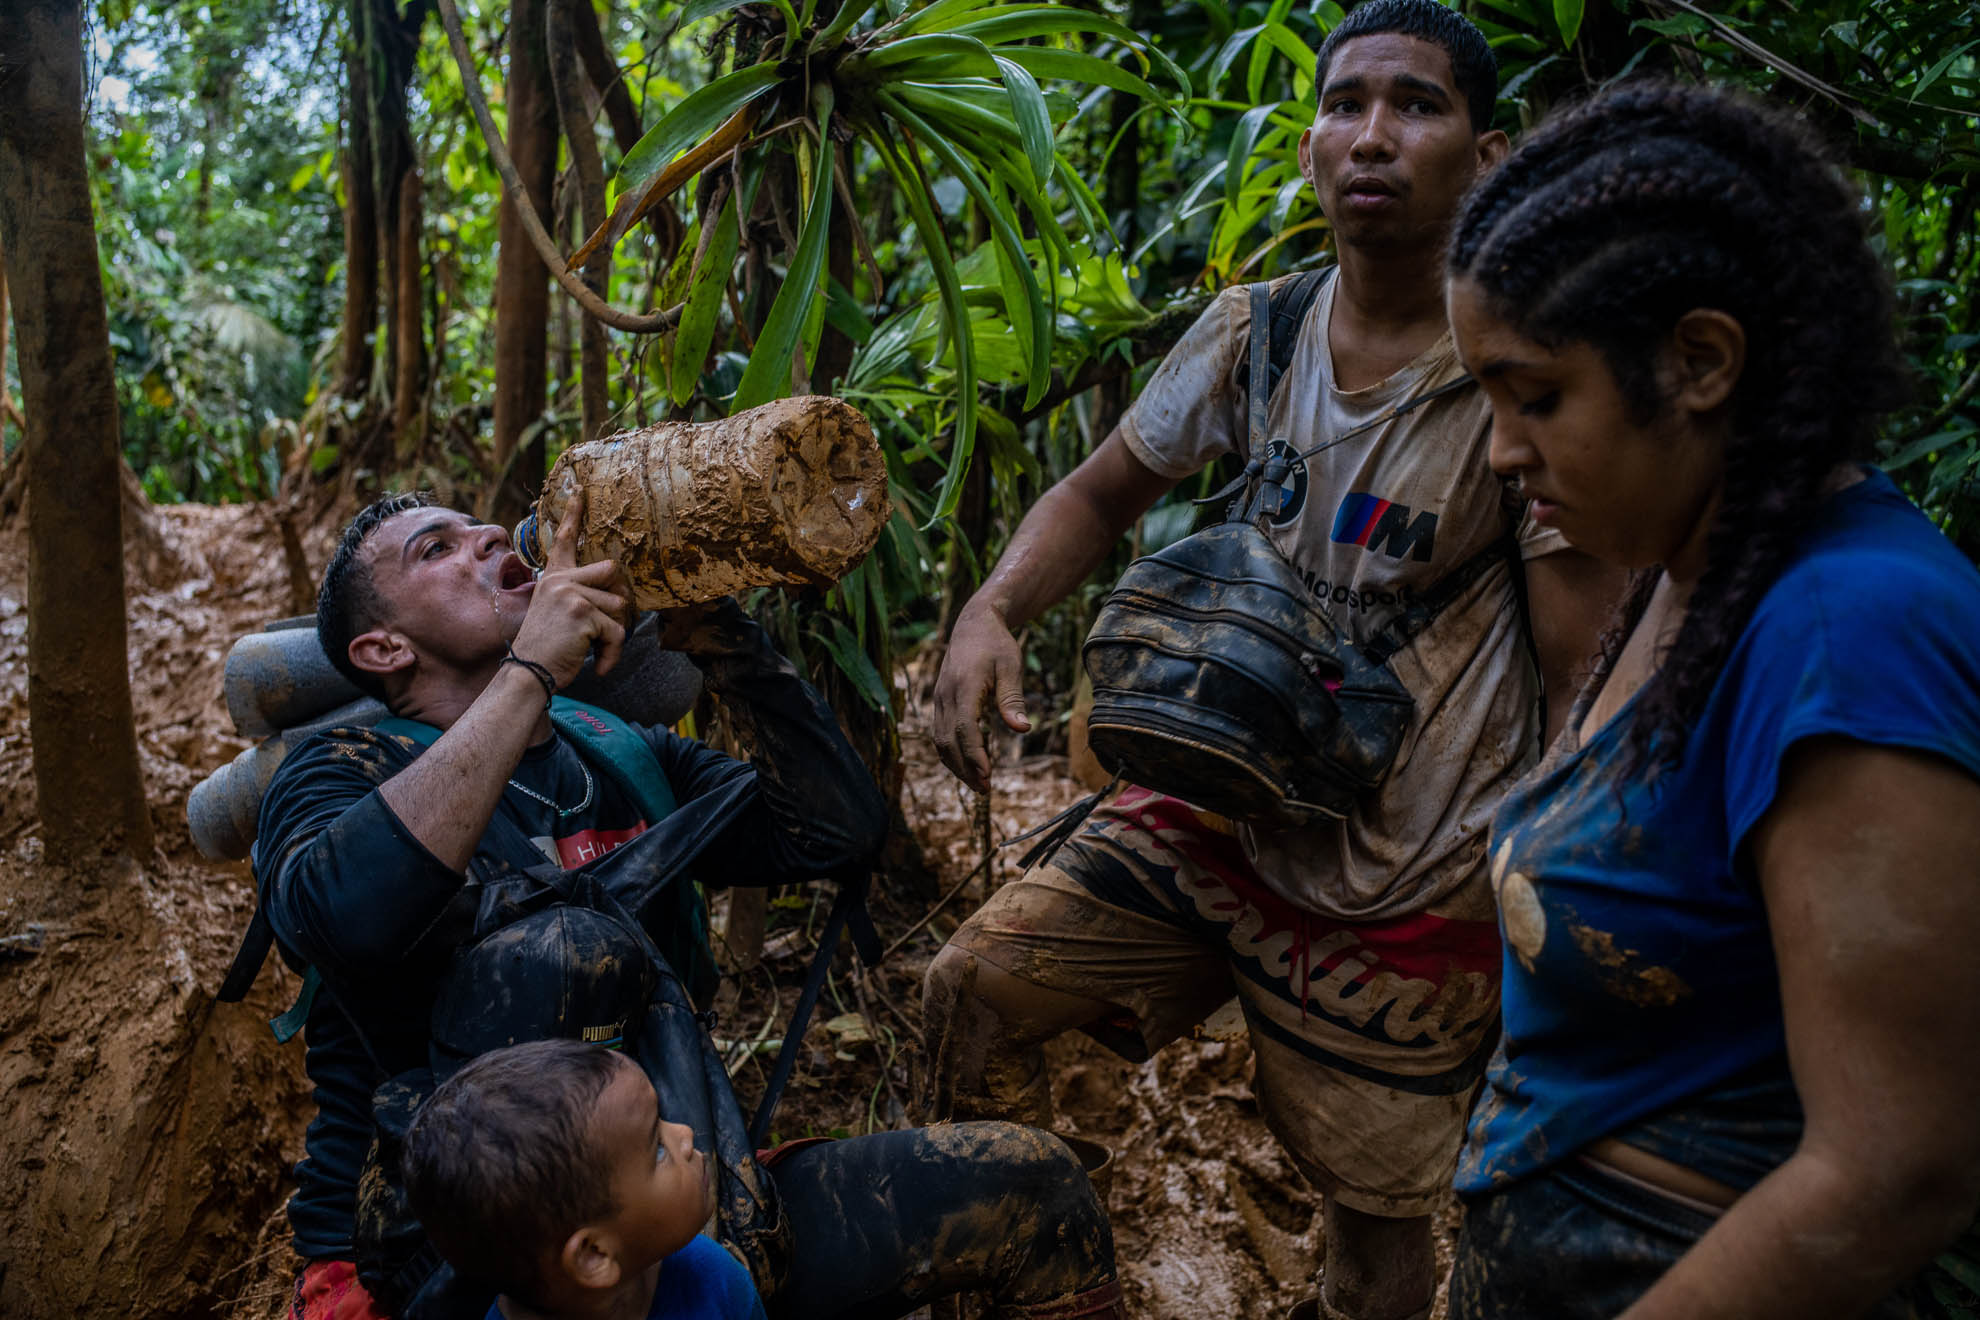 Un hombre toma el último sorbo de agua de un botellón cubierto de lodo. Los migrantes que salen desde Capurganá en Colombia intentan llevar con ellos alimentos y agua para el trayecto. Sin embargo, tras varios días de camino entre la selva y a medida que avanzan en el camino los víveres empiezan a escasear. Octubre de 2022.